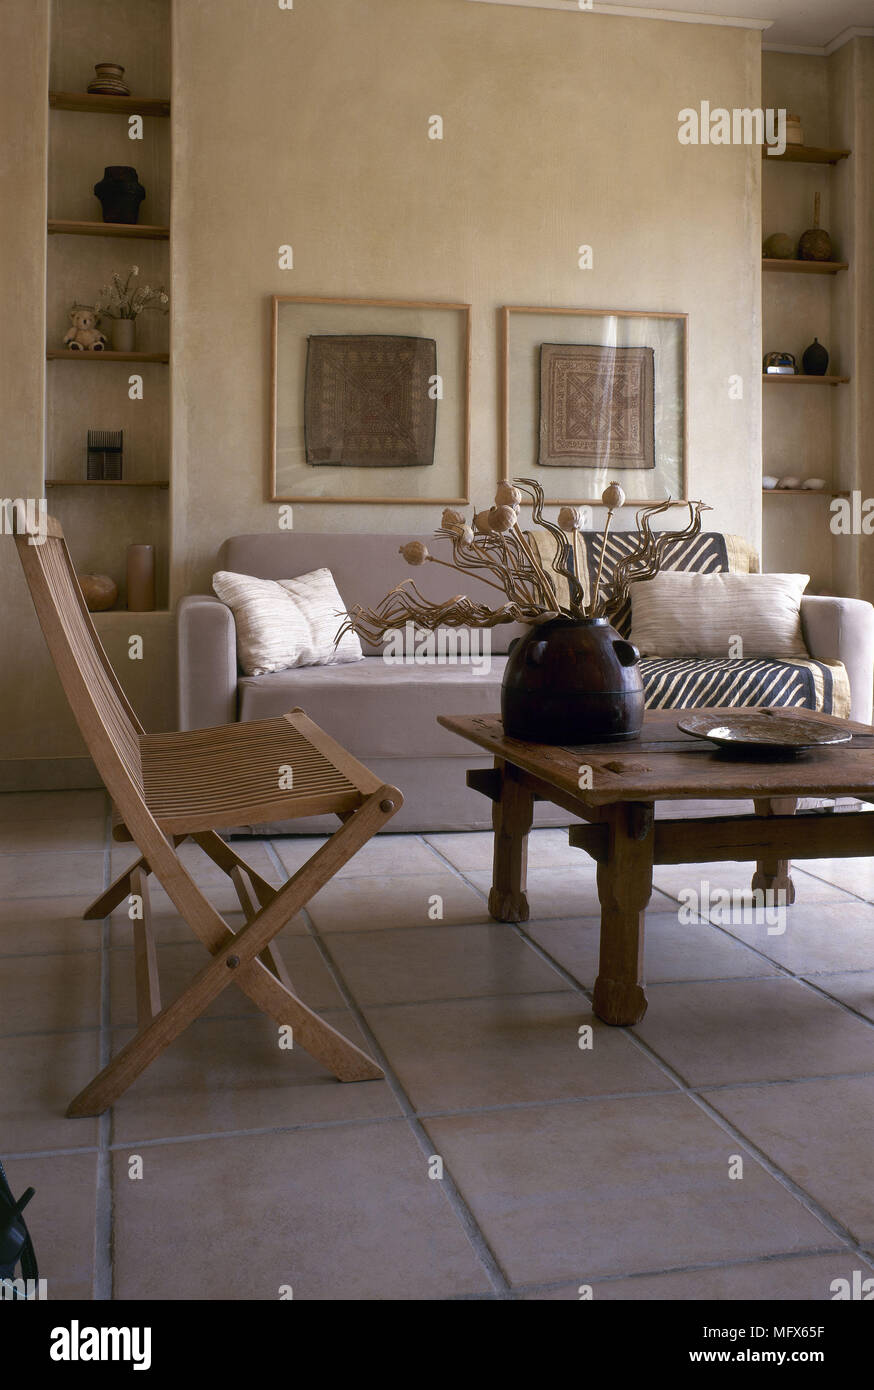 Salón moderno sofá piso de baldosas de piedra rústica mesa de café de  madera silla plegable interiores habitaciones materiales naturales colores  neutros Fotografía de stock - Alamy